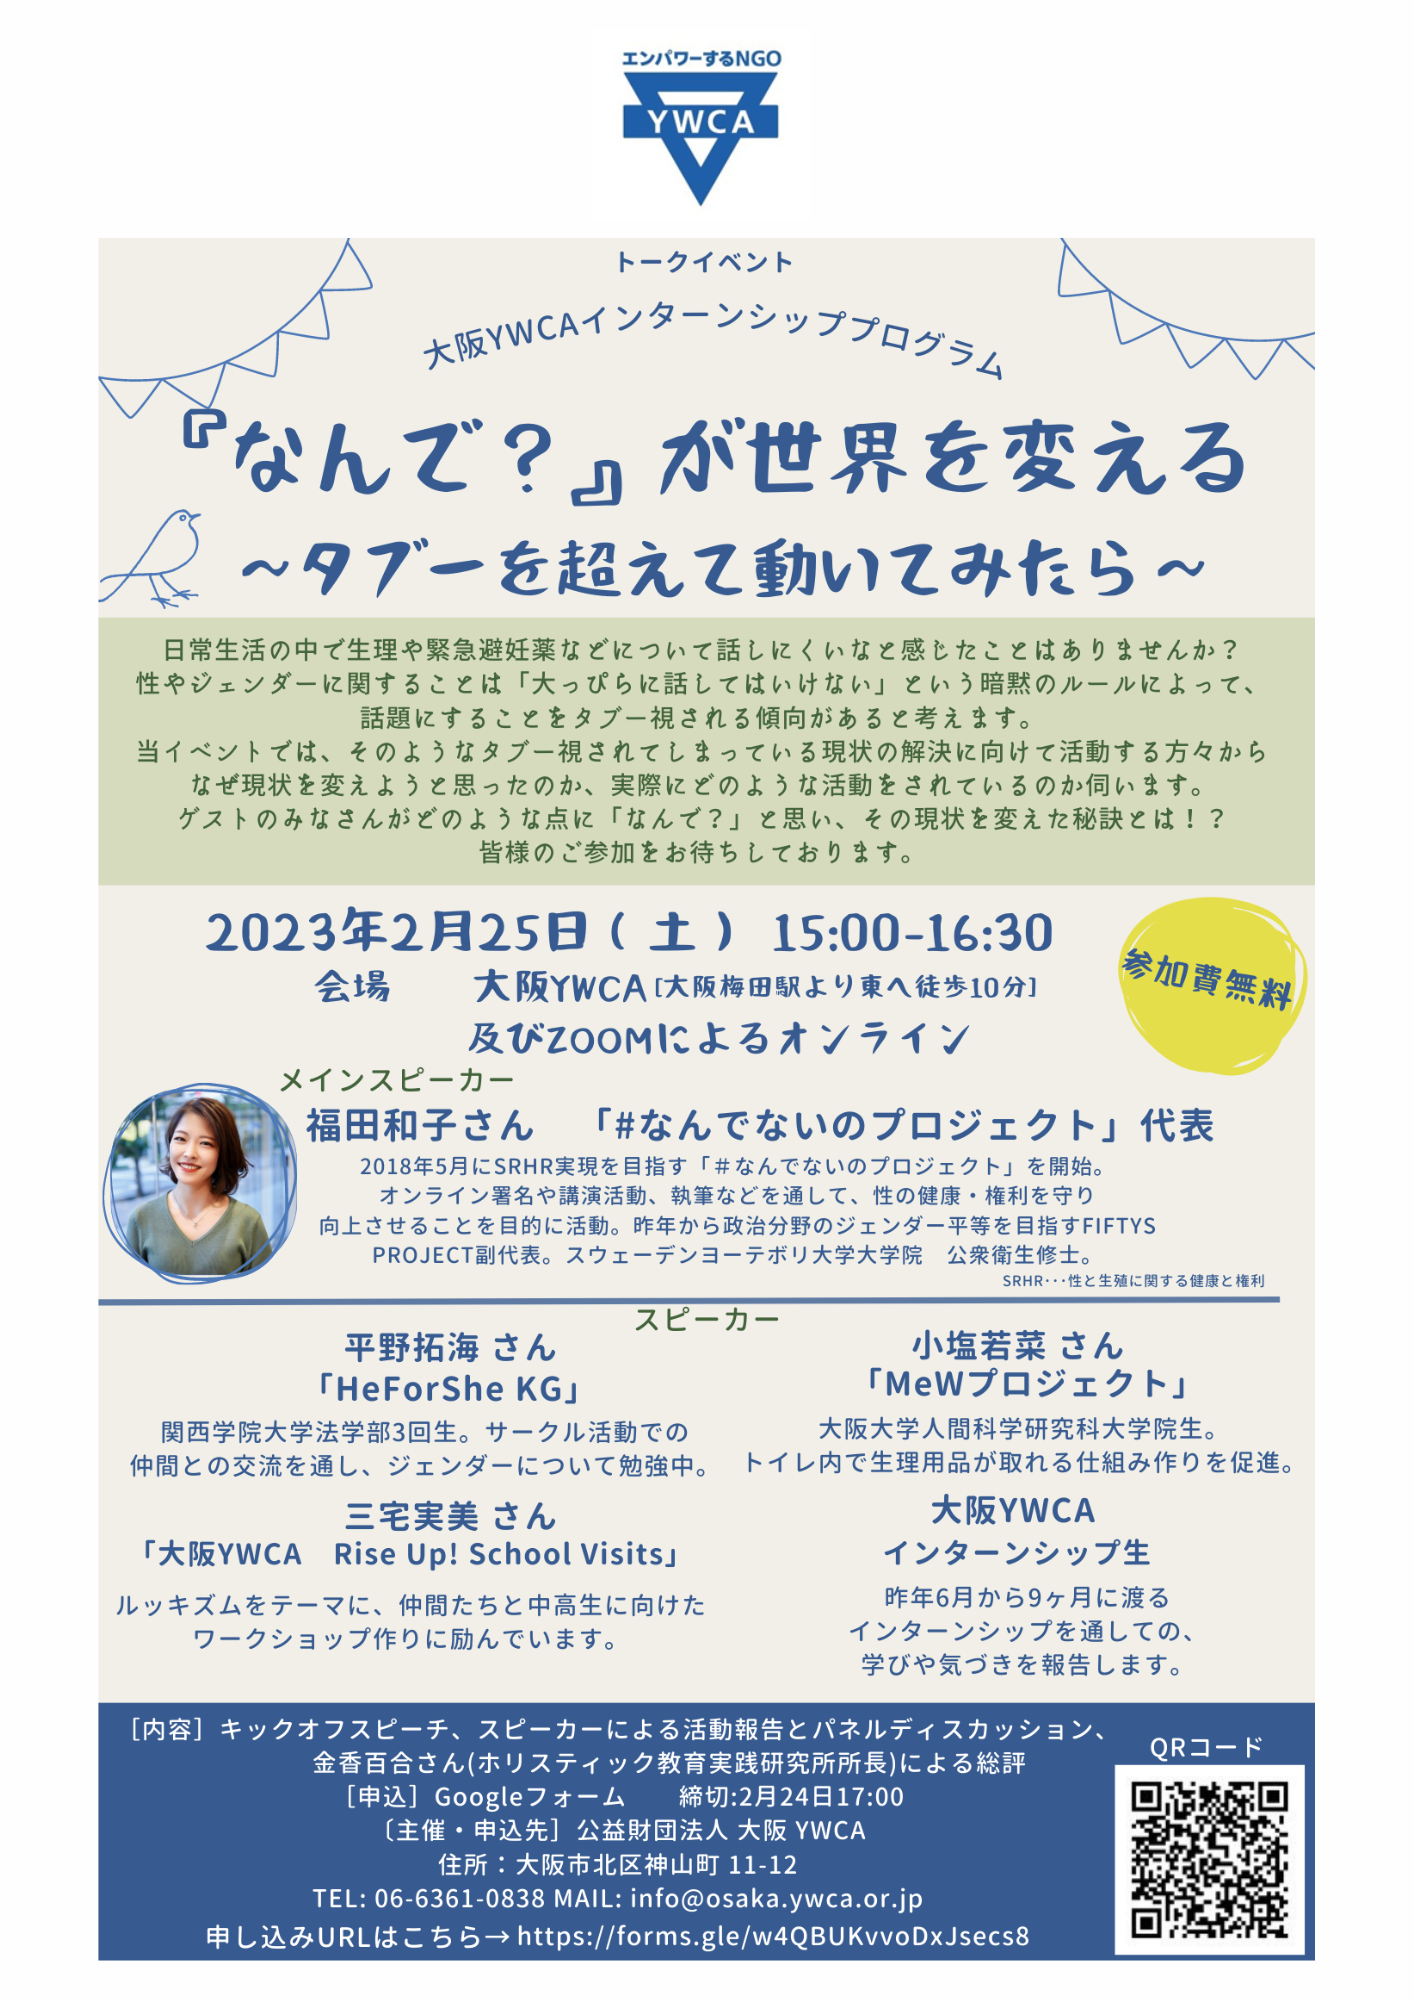 2/25 大阪YWCA 女性エンパワメント部より公開プログラムのお知らせ！